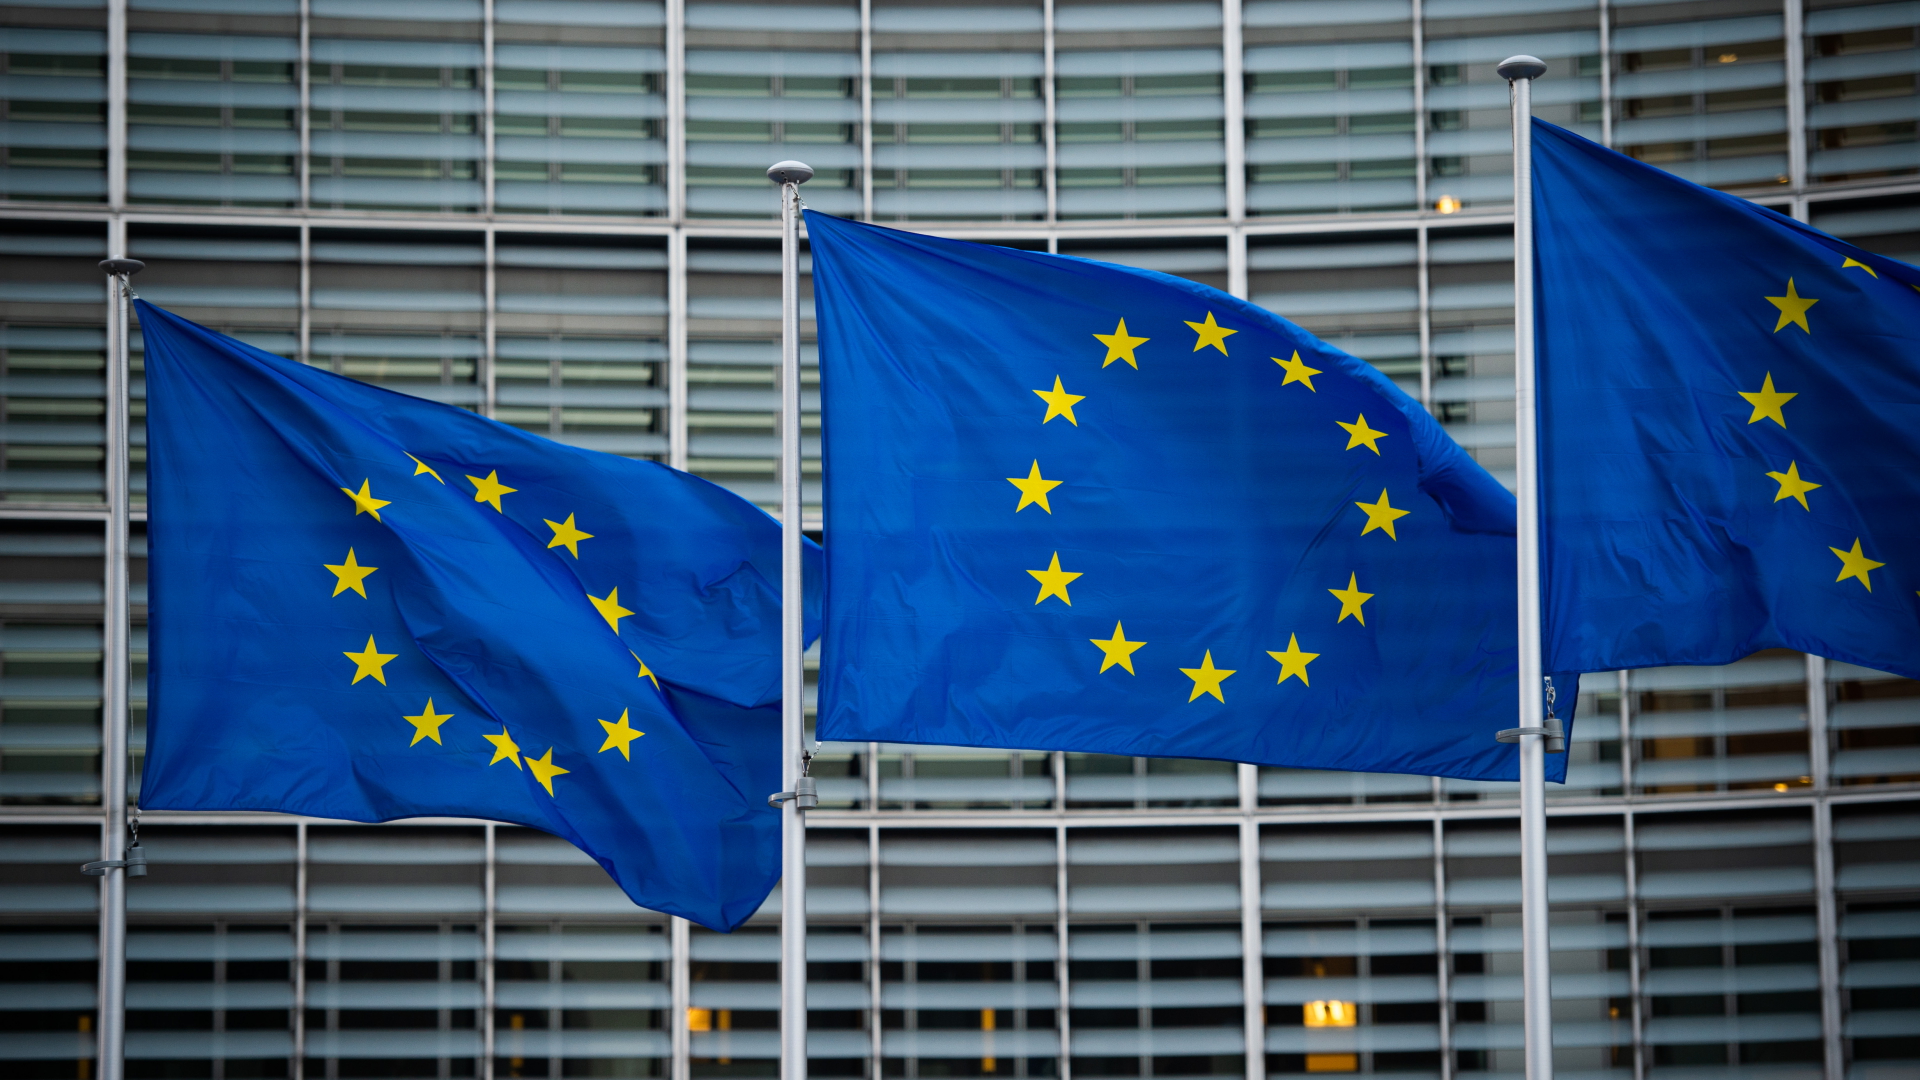 Flaggen der Europäischen Union wehen im Wind. | dpa